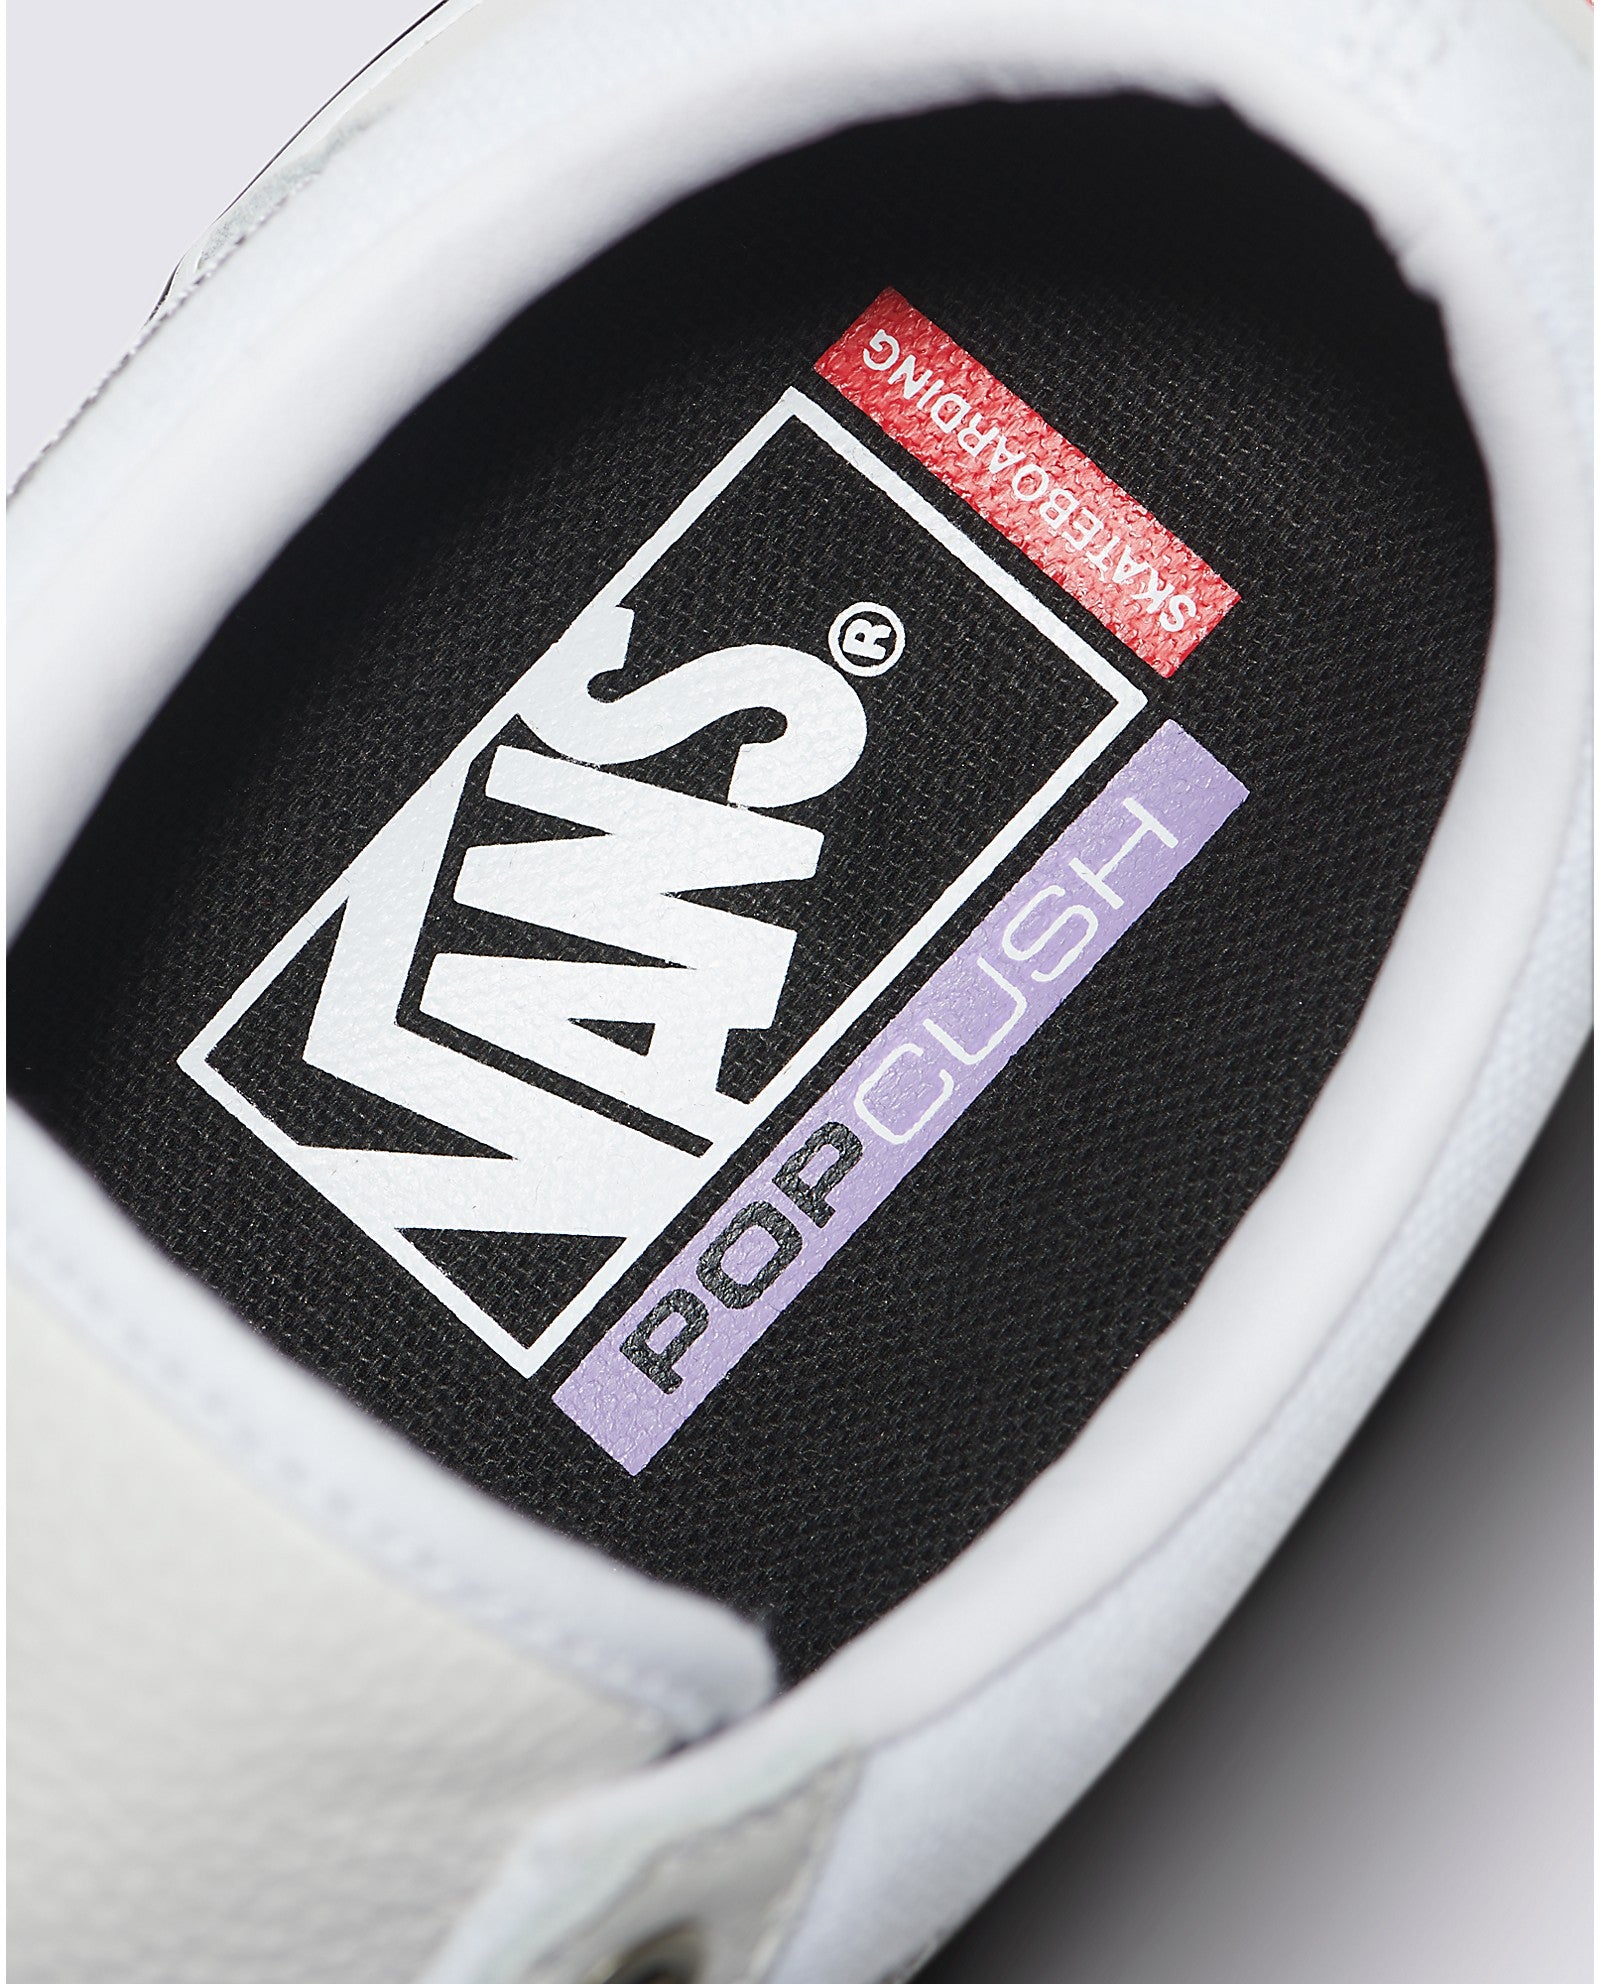 White/White Leather Skate Old Skool Vans Shoes Detail